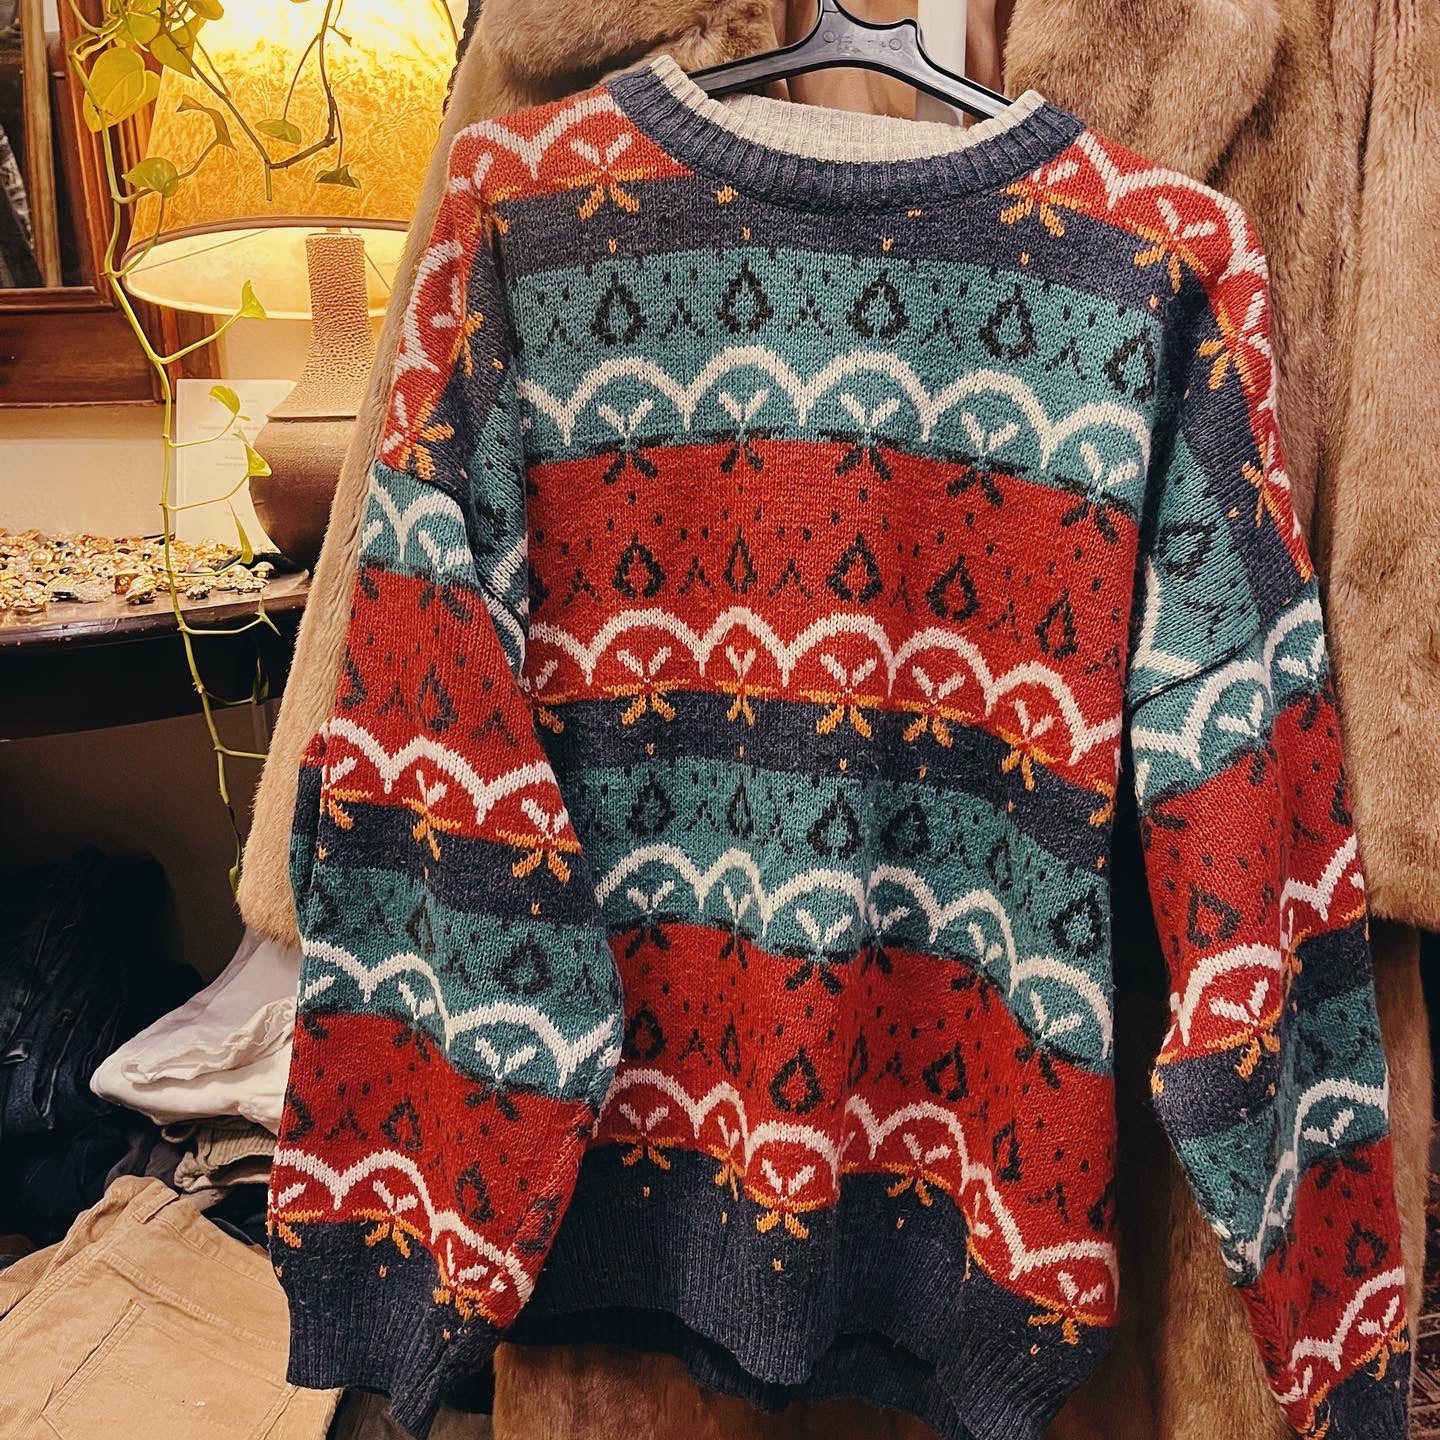 Vintage patterned jumper .Fits best L